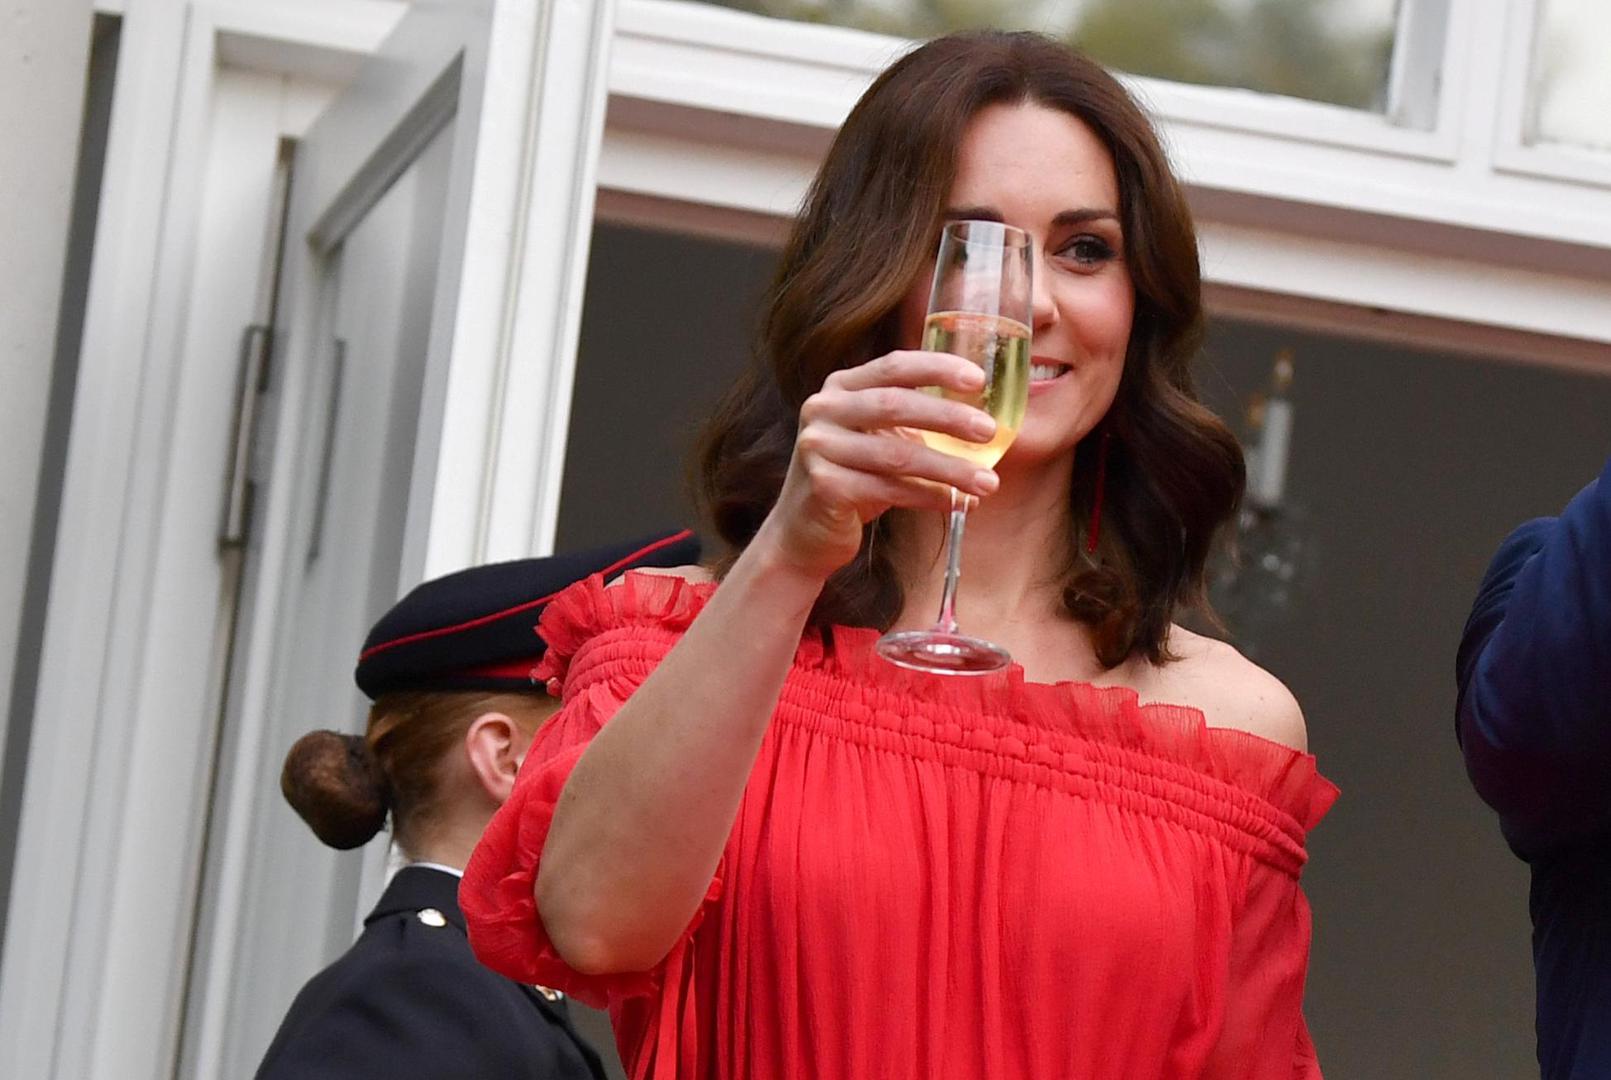 Vojvotkinja od Cambridgea, Kate Middleton, javnosti je poznata po svom besprijekornom i elegantnom stilu kakav i priliči ženi kraljevića Velike Britanije. Ovog puta, Kate je sve oduševila ležernim izdanjem u kakvom je ne viđamo često!

